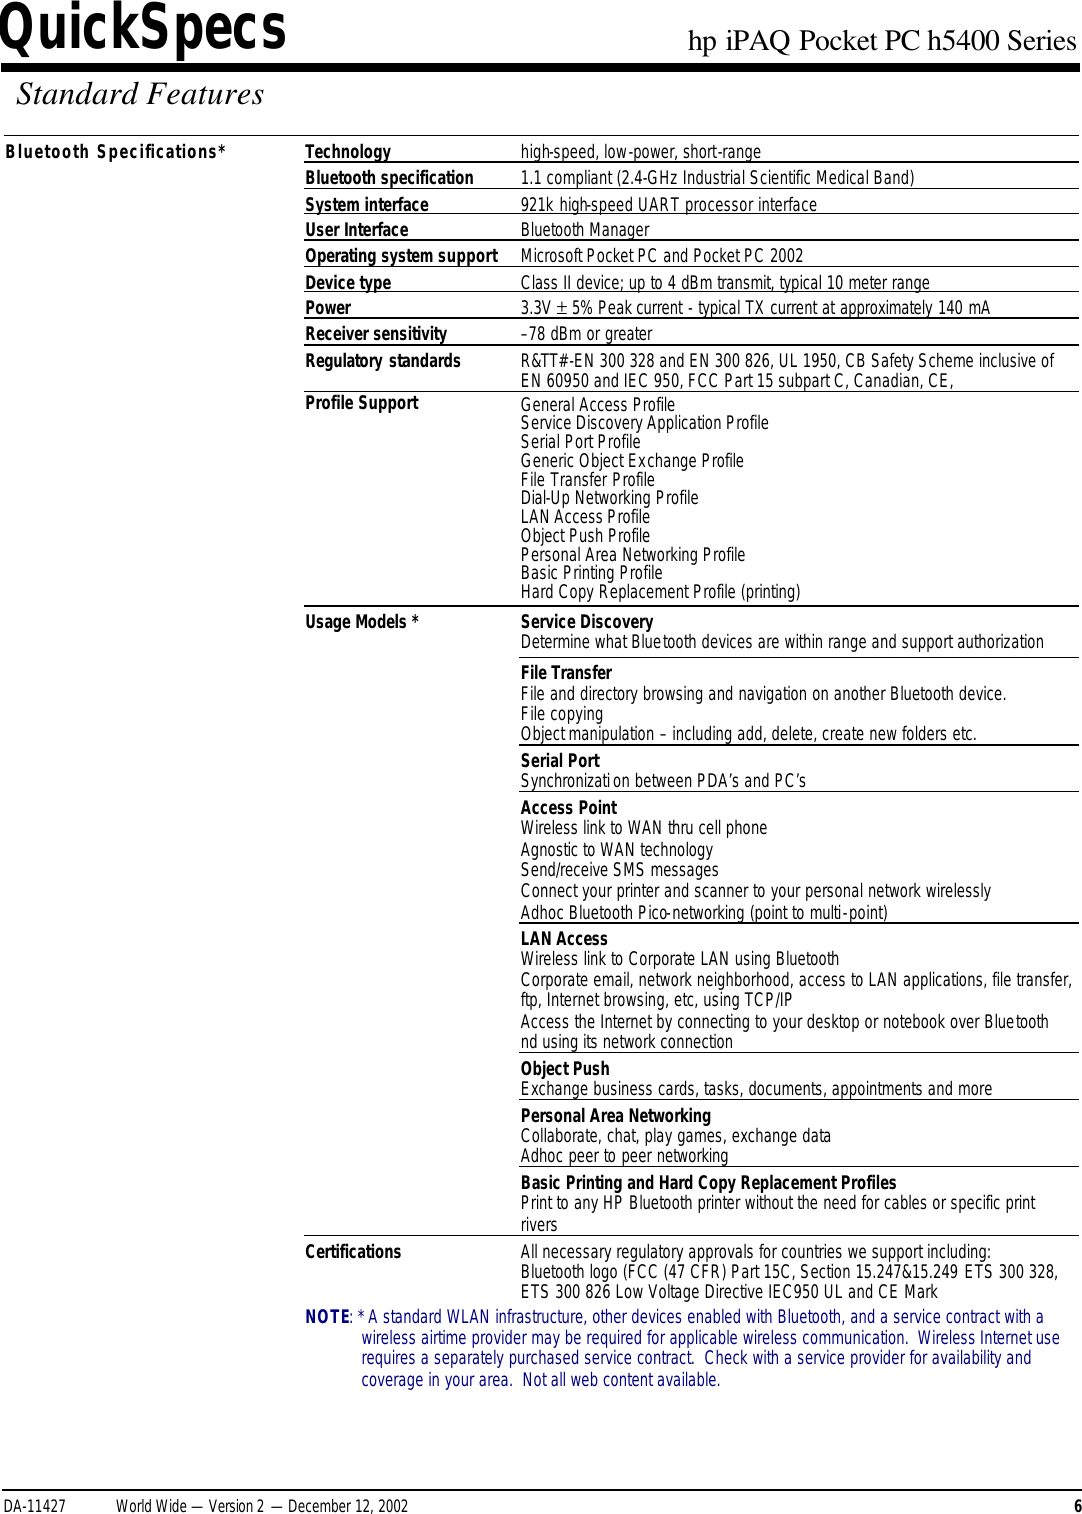 Page 6 of 11 - HP IPAQ Pocket PC H5400 Series - QuickSpecs Overview I PAQ Quick Specs Lpia8003